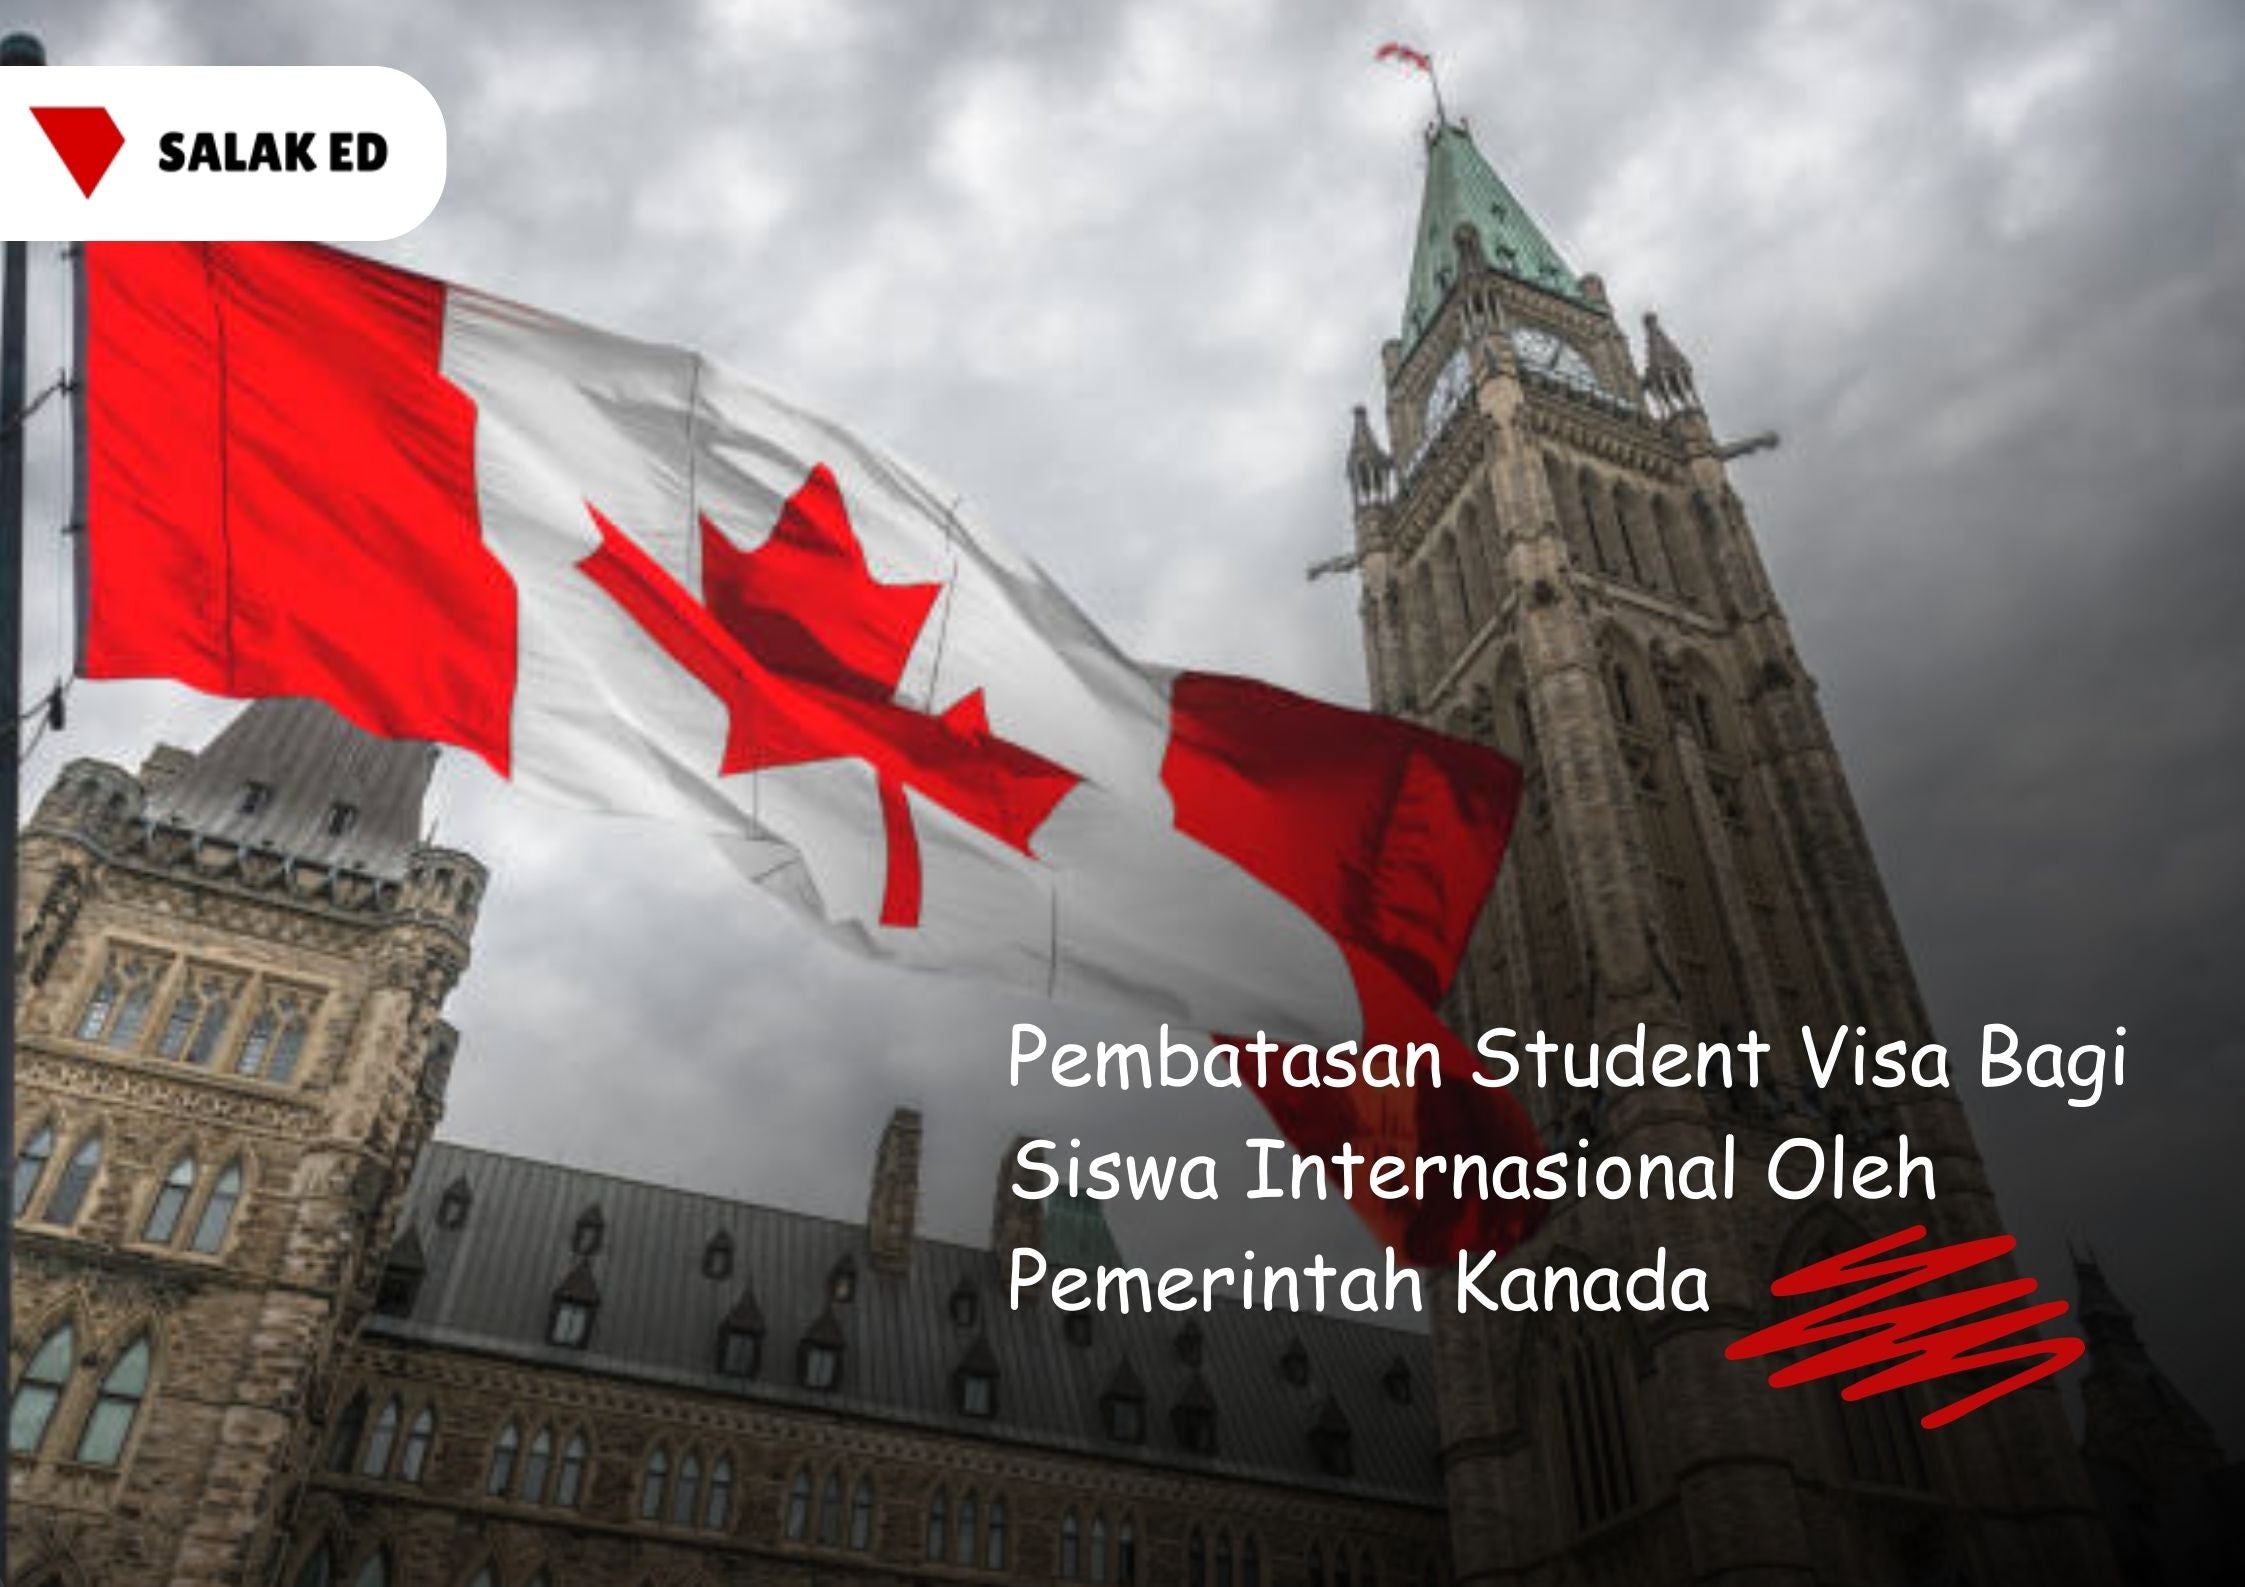 Pembatasan Student Visa Bagi Siswa Internasional Oleh Pemerintah Kanada